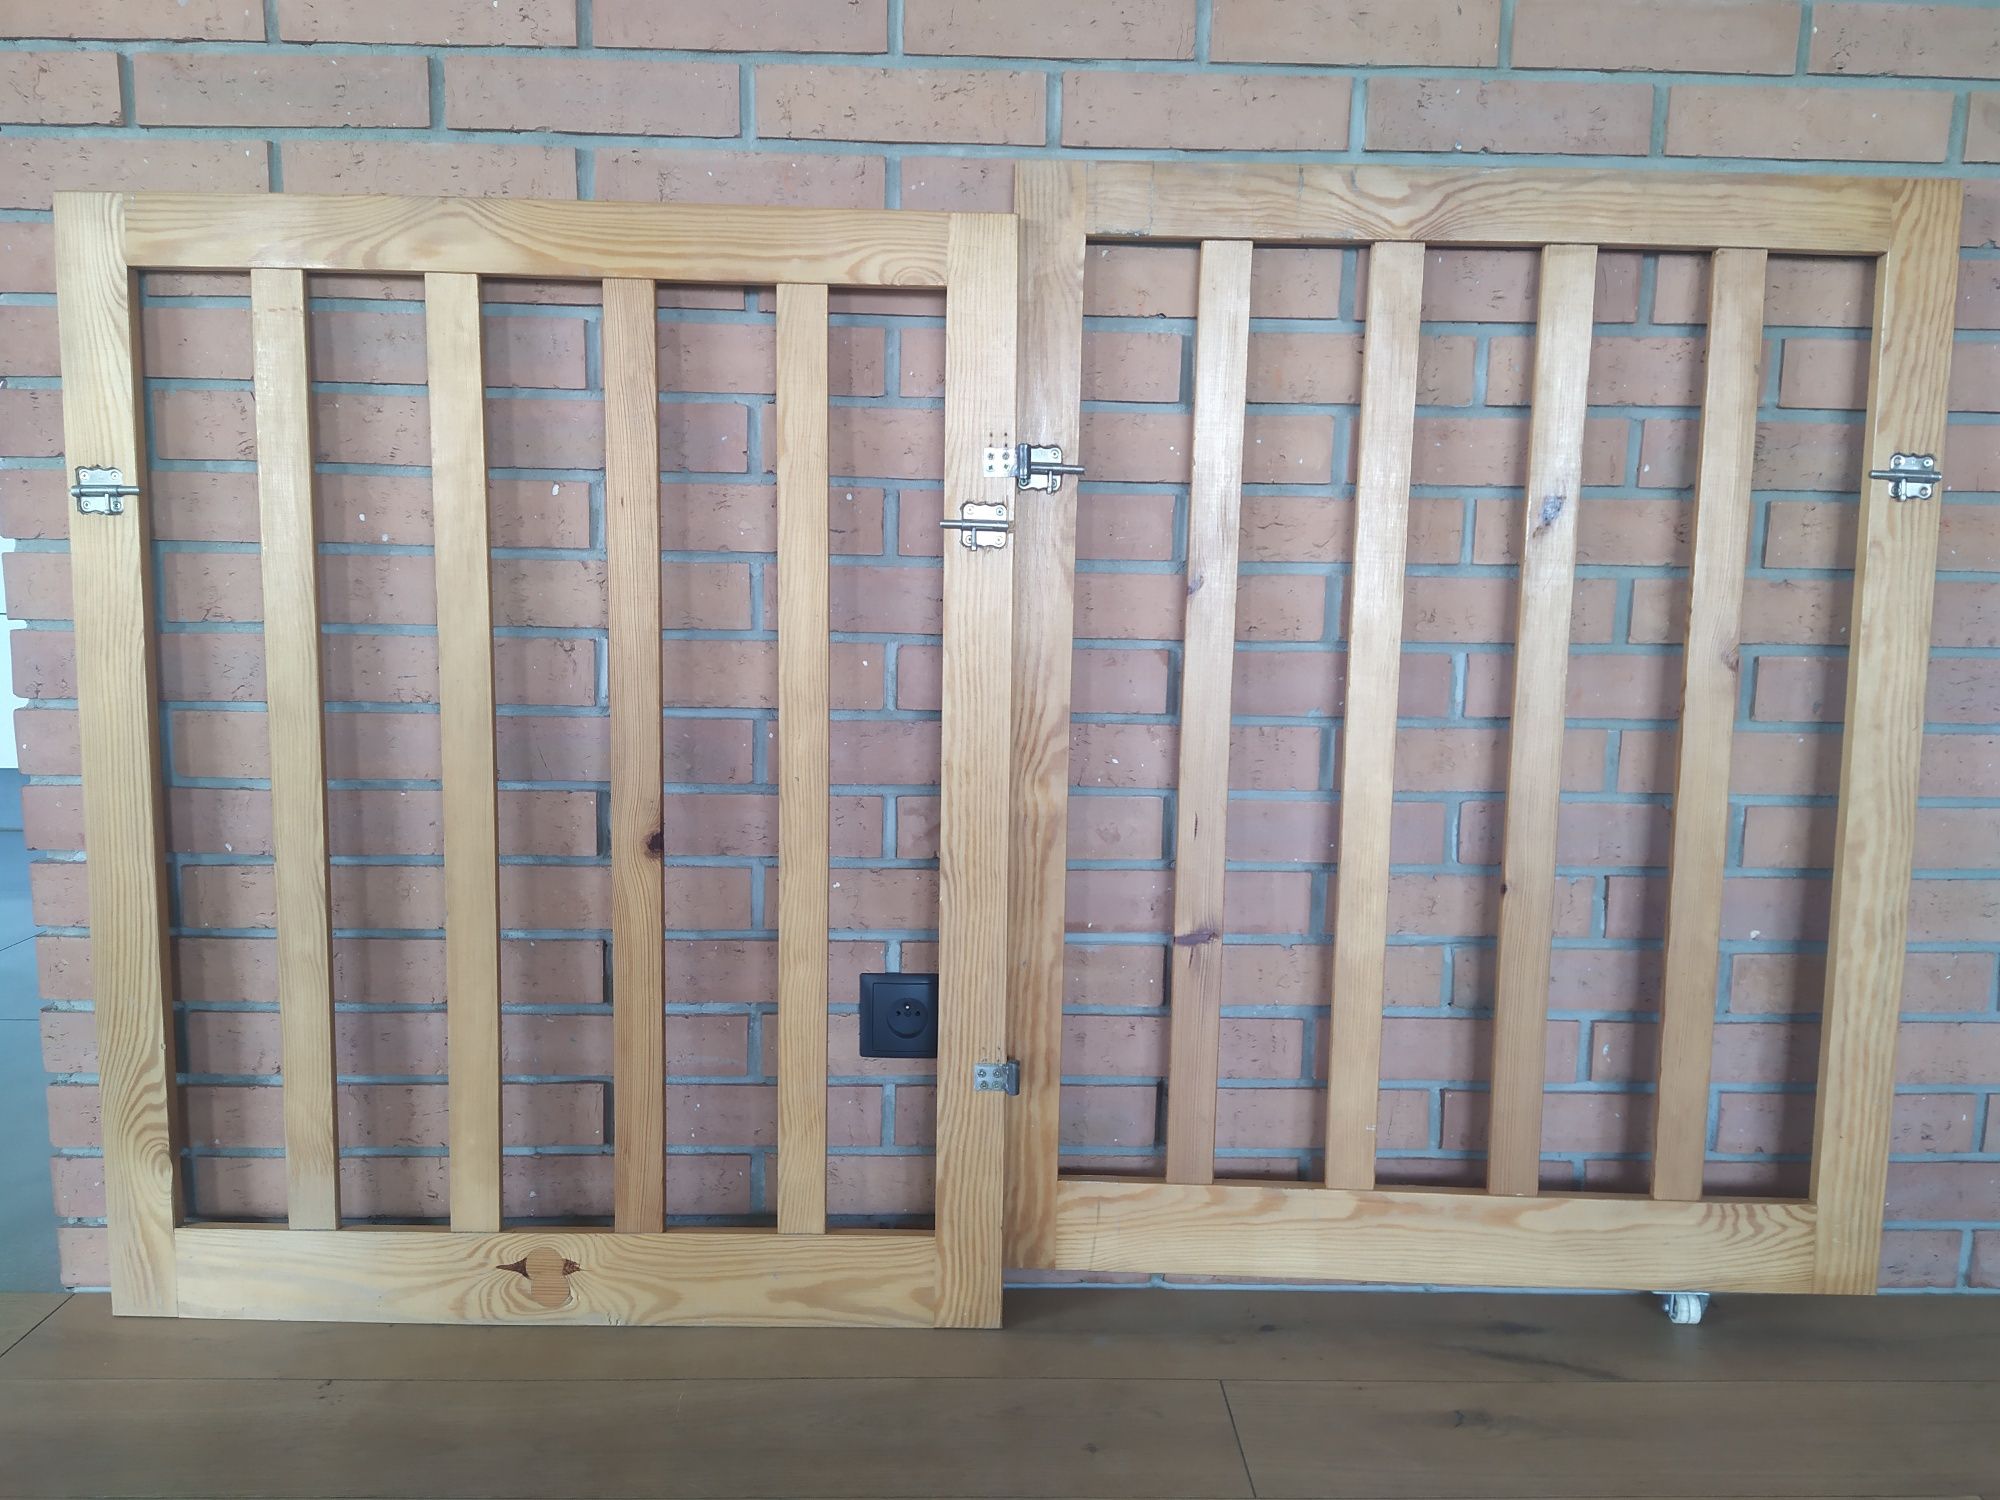 Bramki barierki zabezpieczające do drzwi 80cm